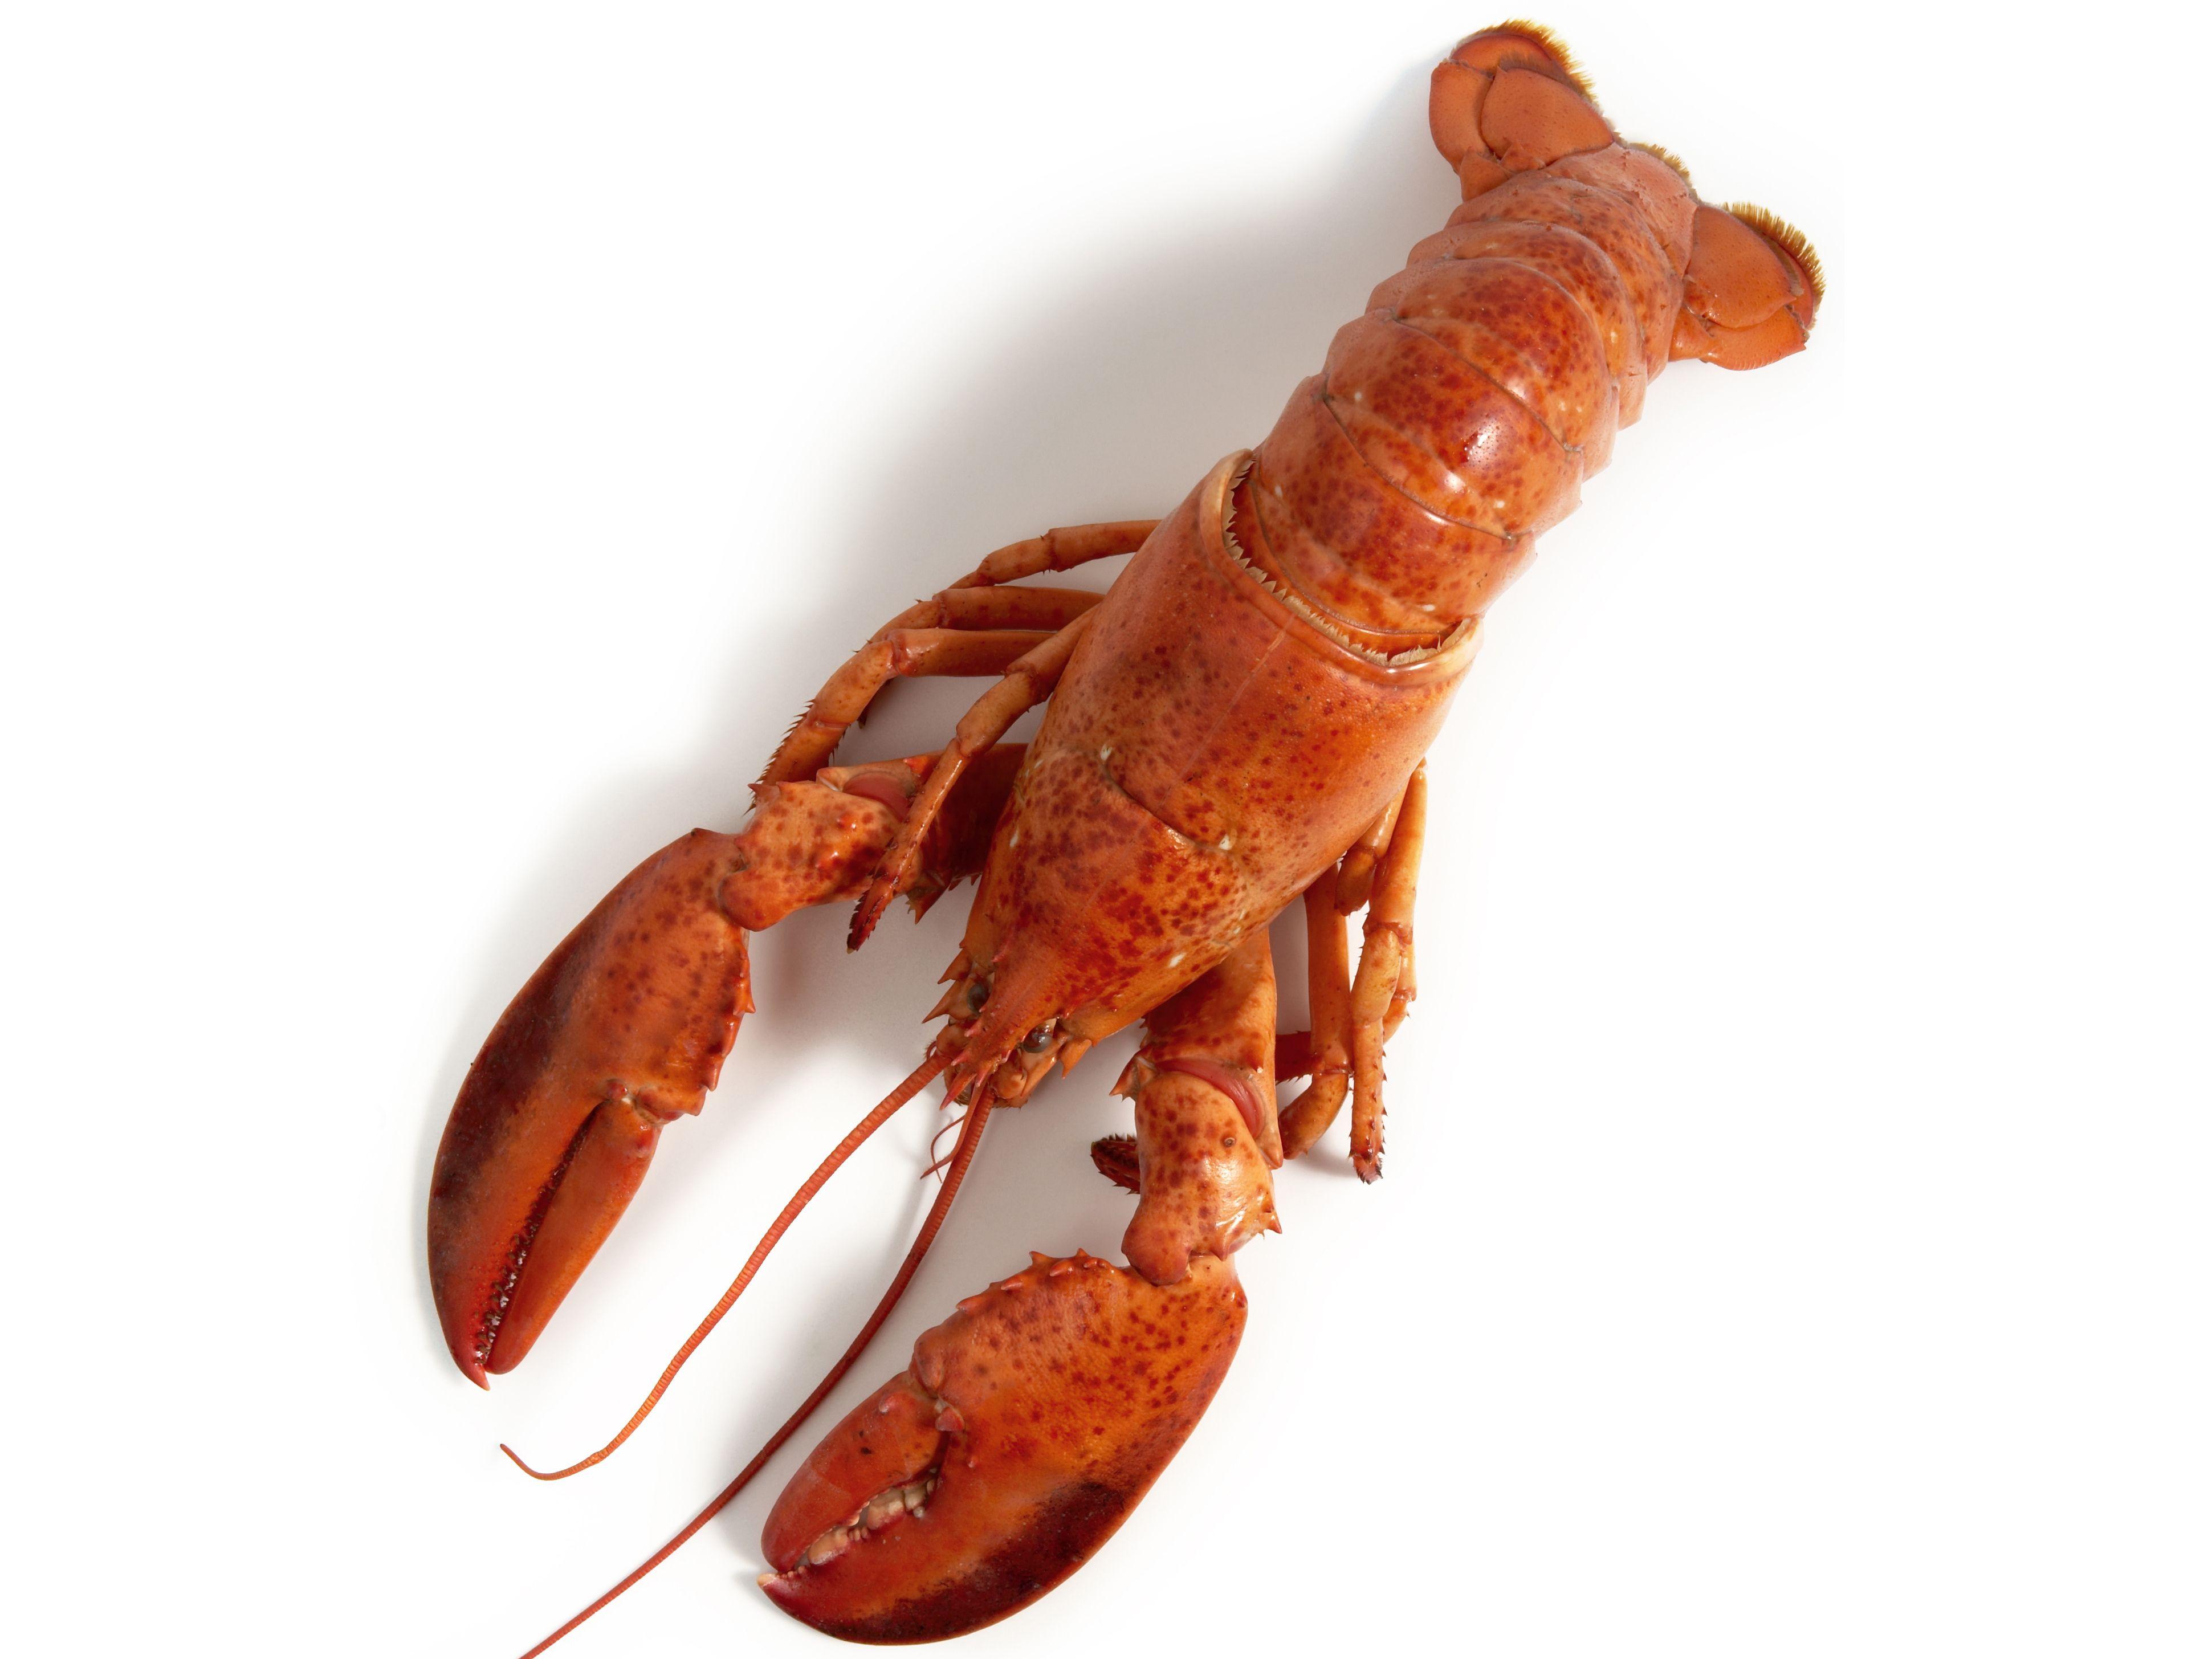 1200x1200px Lobster (136.89 KB).03.2015